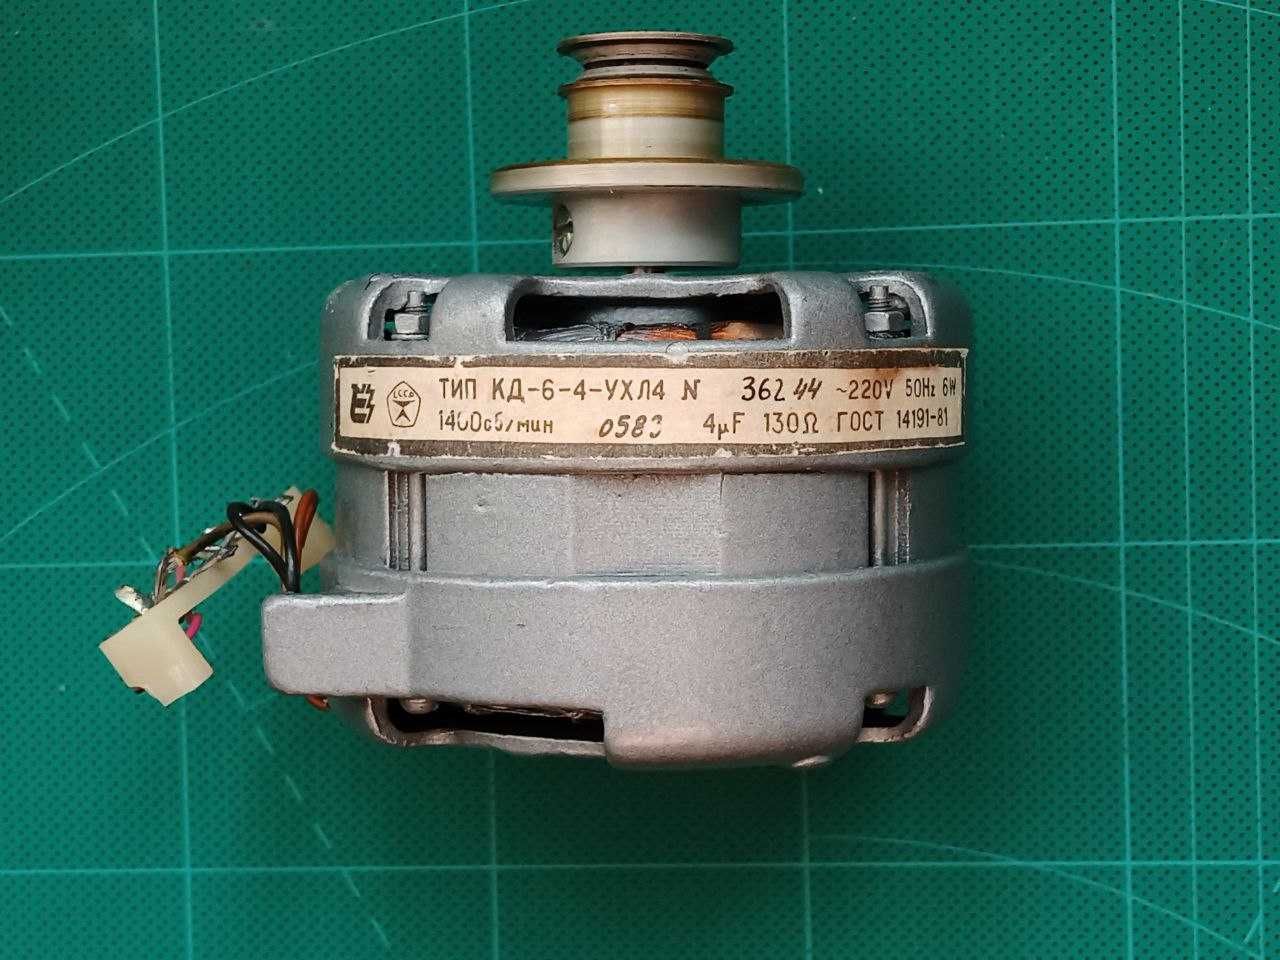 Электродвигатель советского магнитофона КД-6-4-УХЛ4